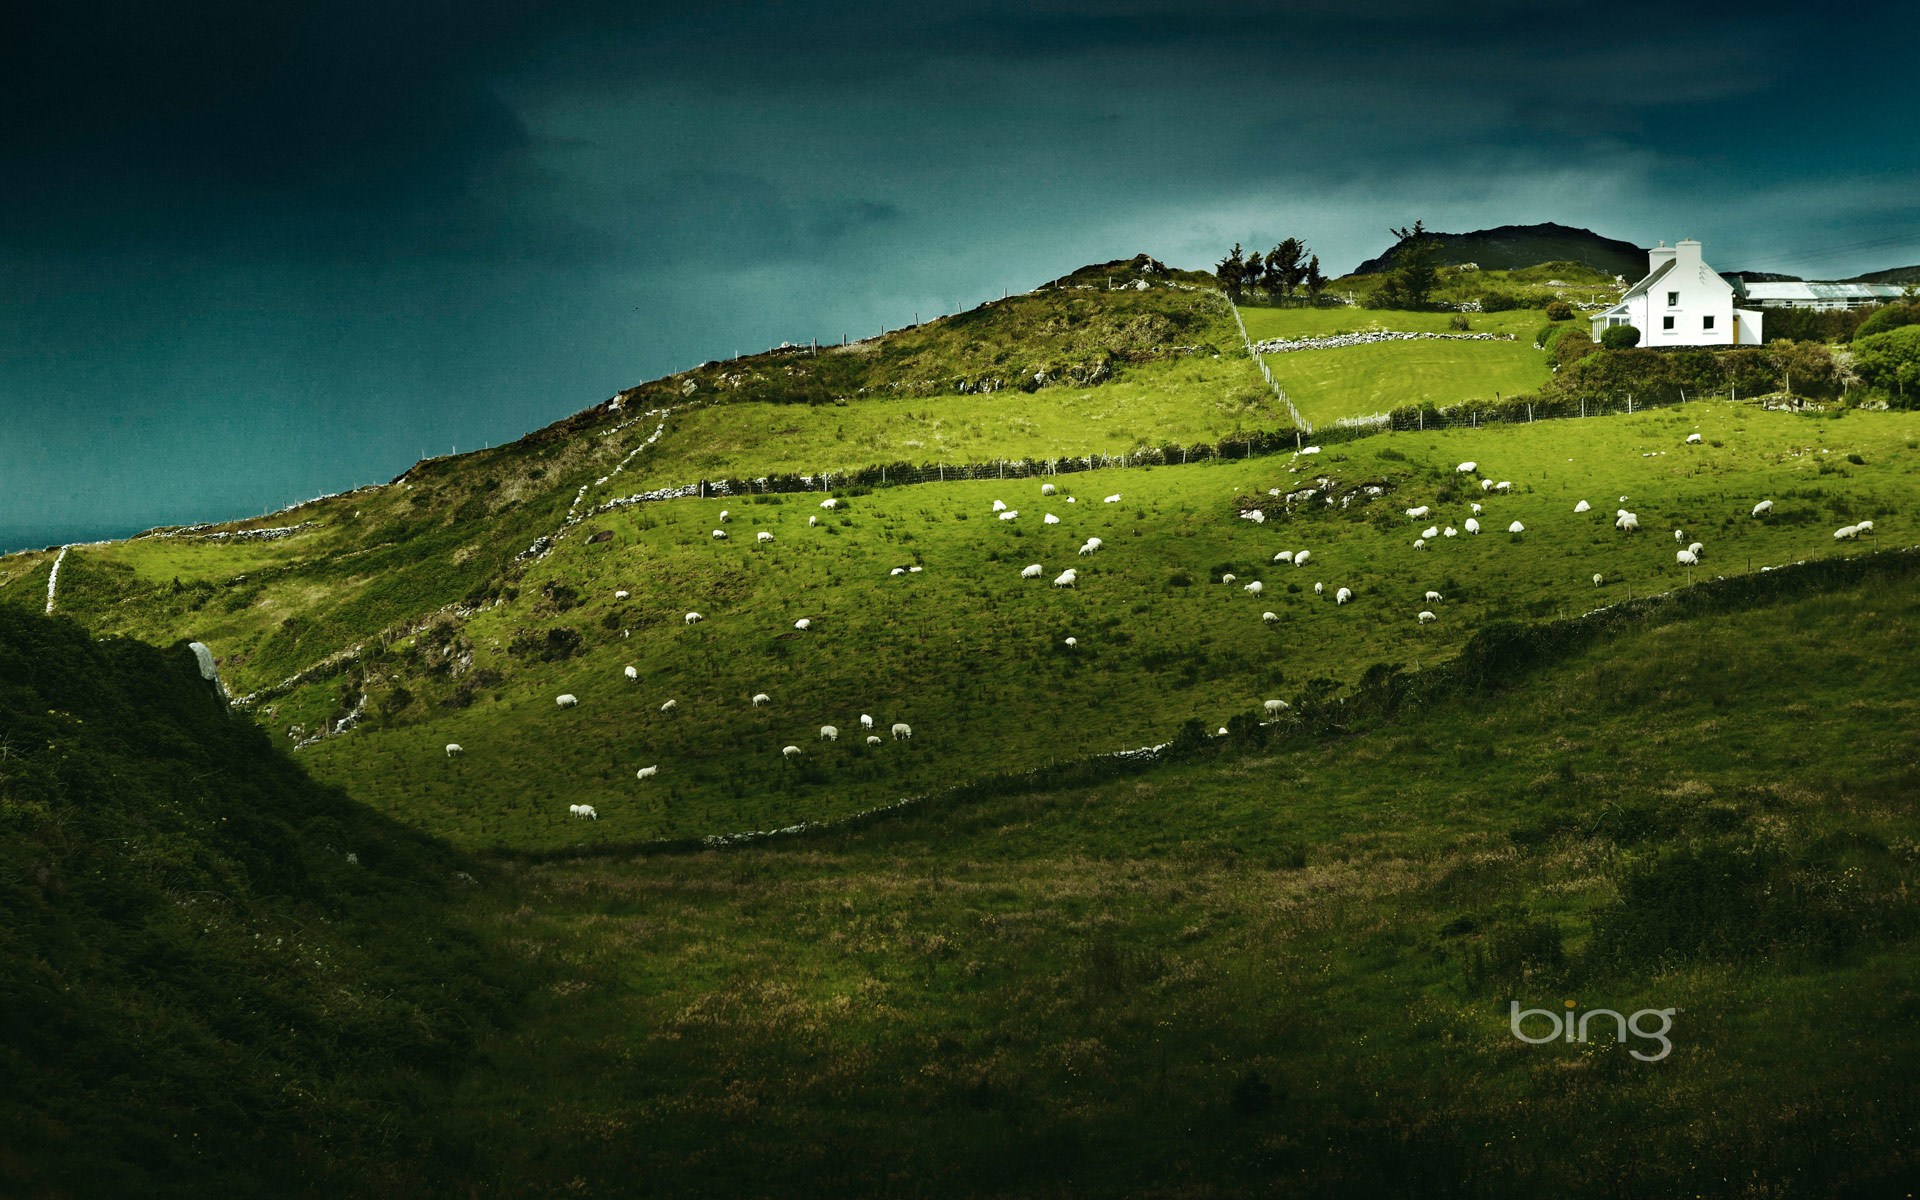 ireland, sheep, animal, house, landscape